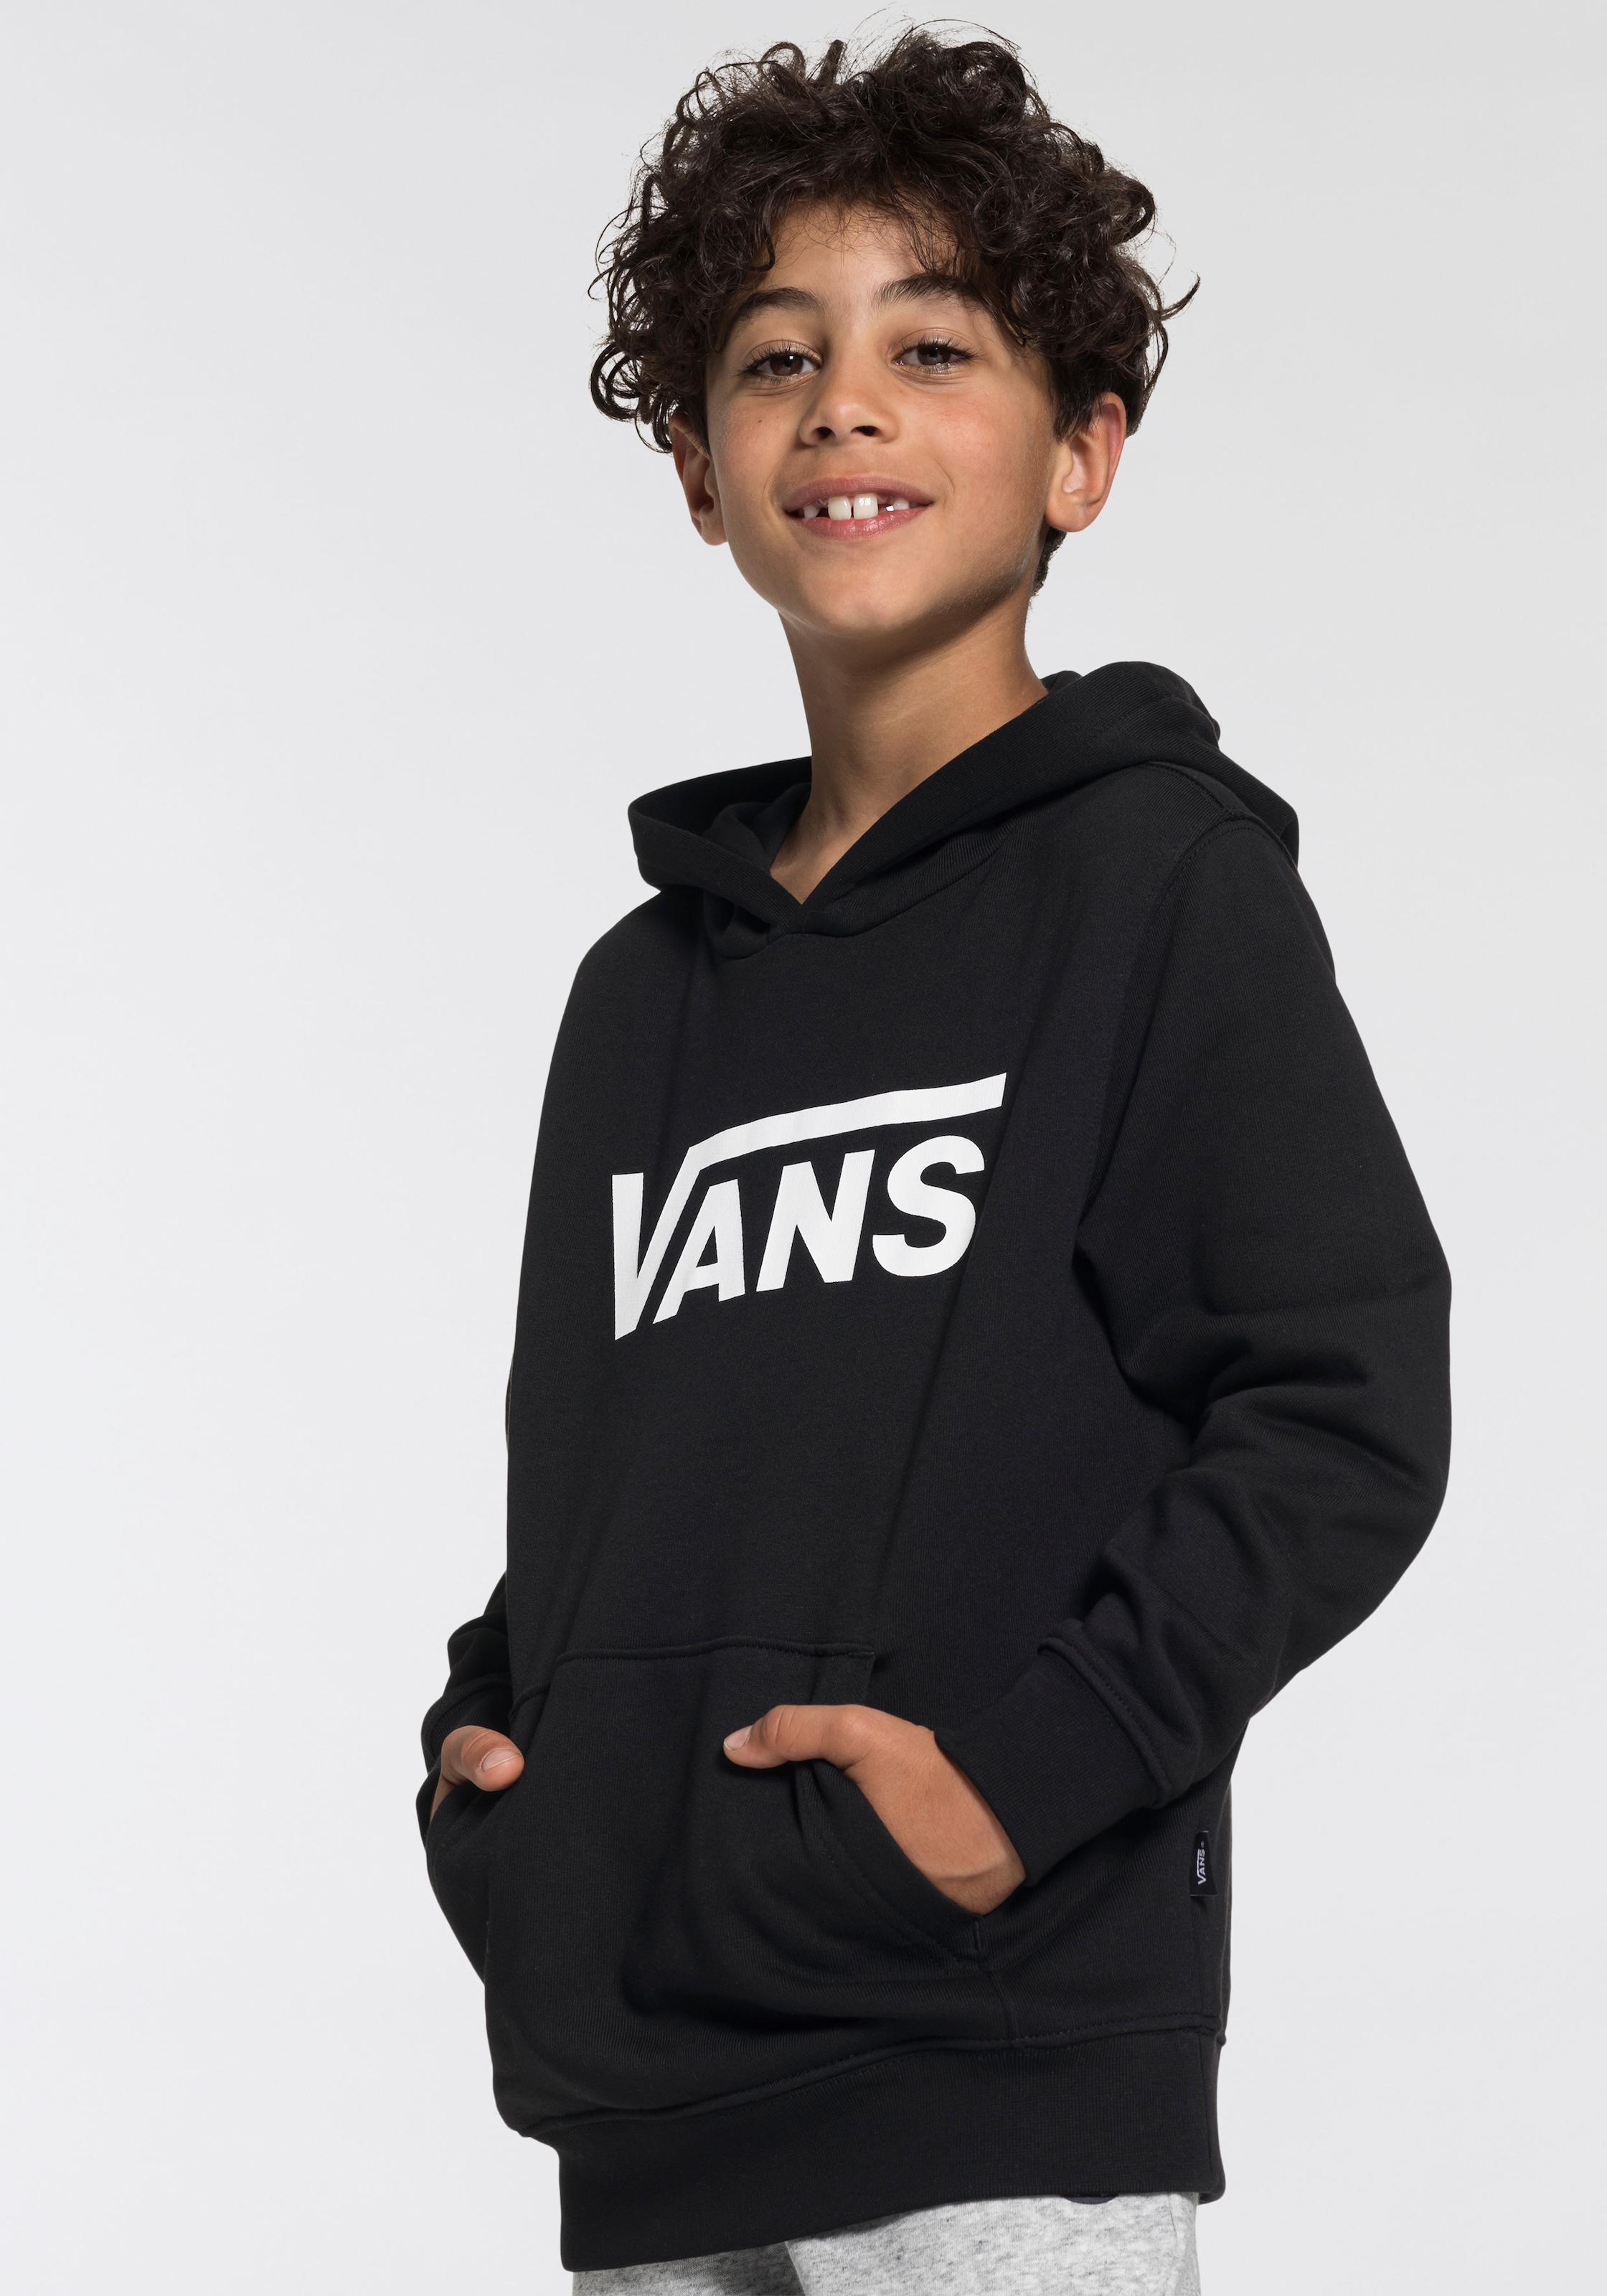 Rechnung PO KIDS« auf Vans CLASSIC Kapuzensweatshirt bestellen »VANS